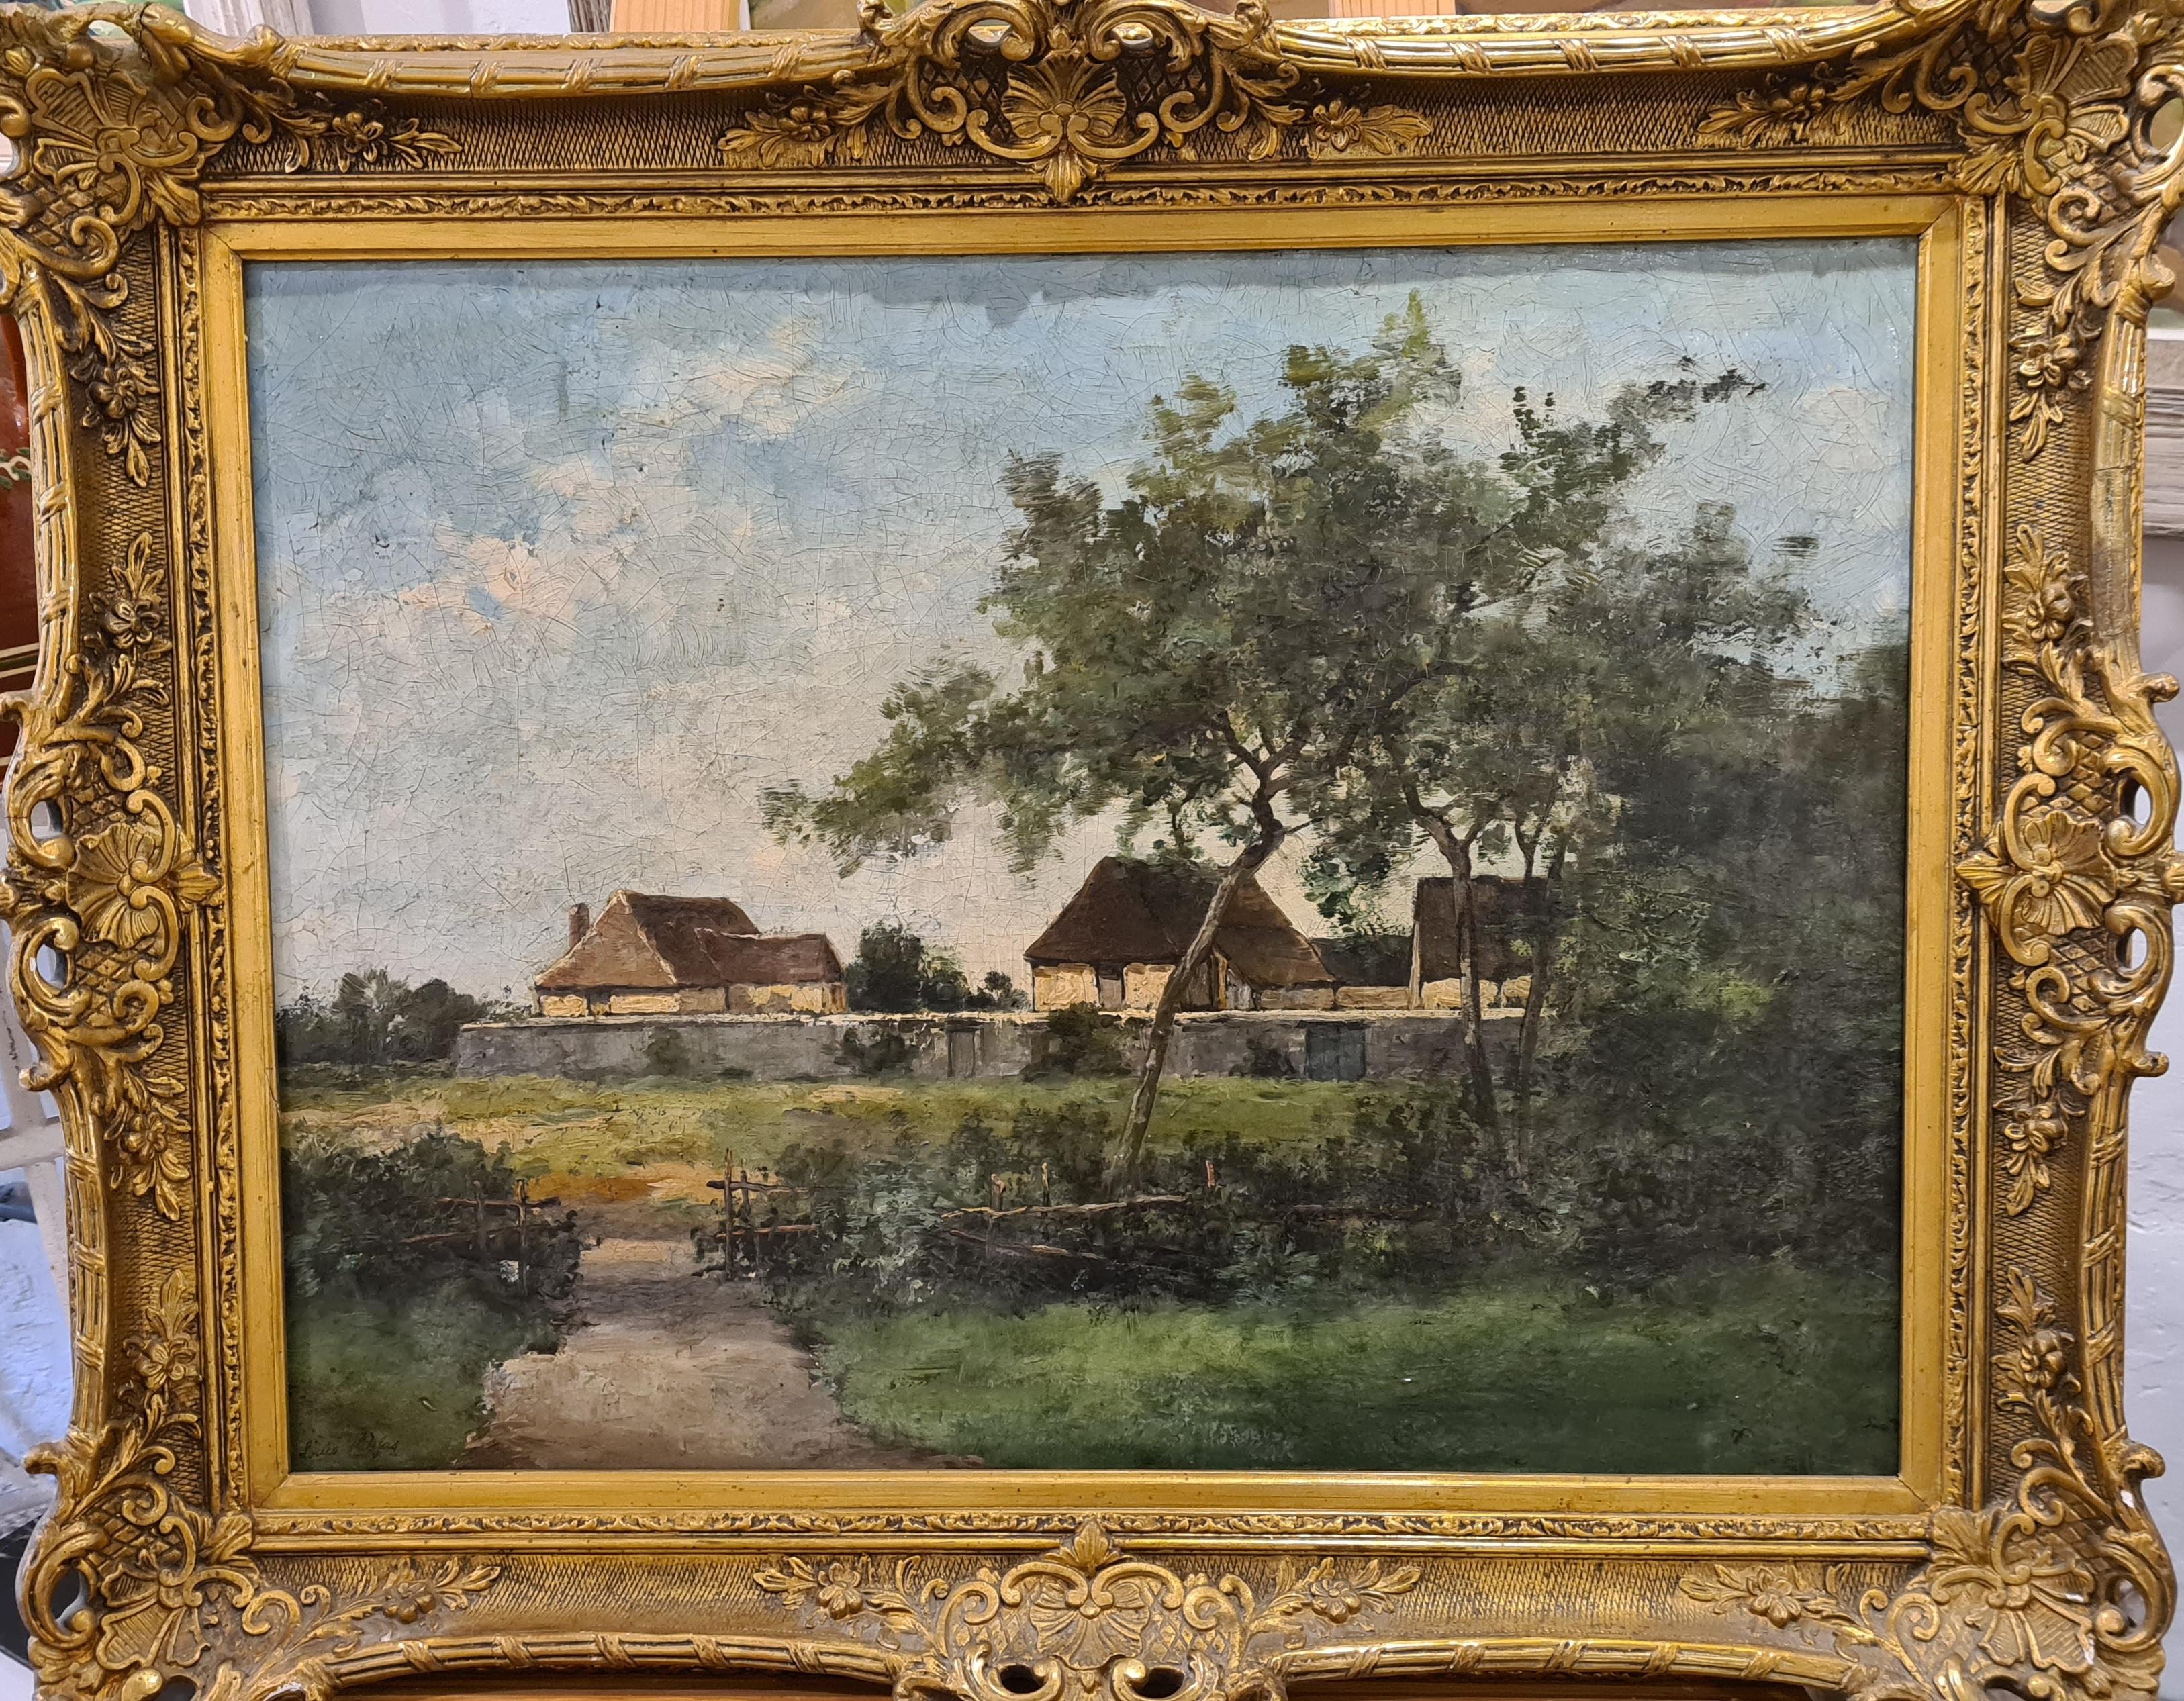 Louis Remy Matifas Landscape Painting - The Farm, Barbizon, Fontainebleau Forest